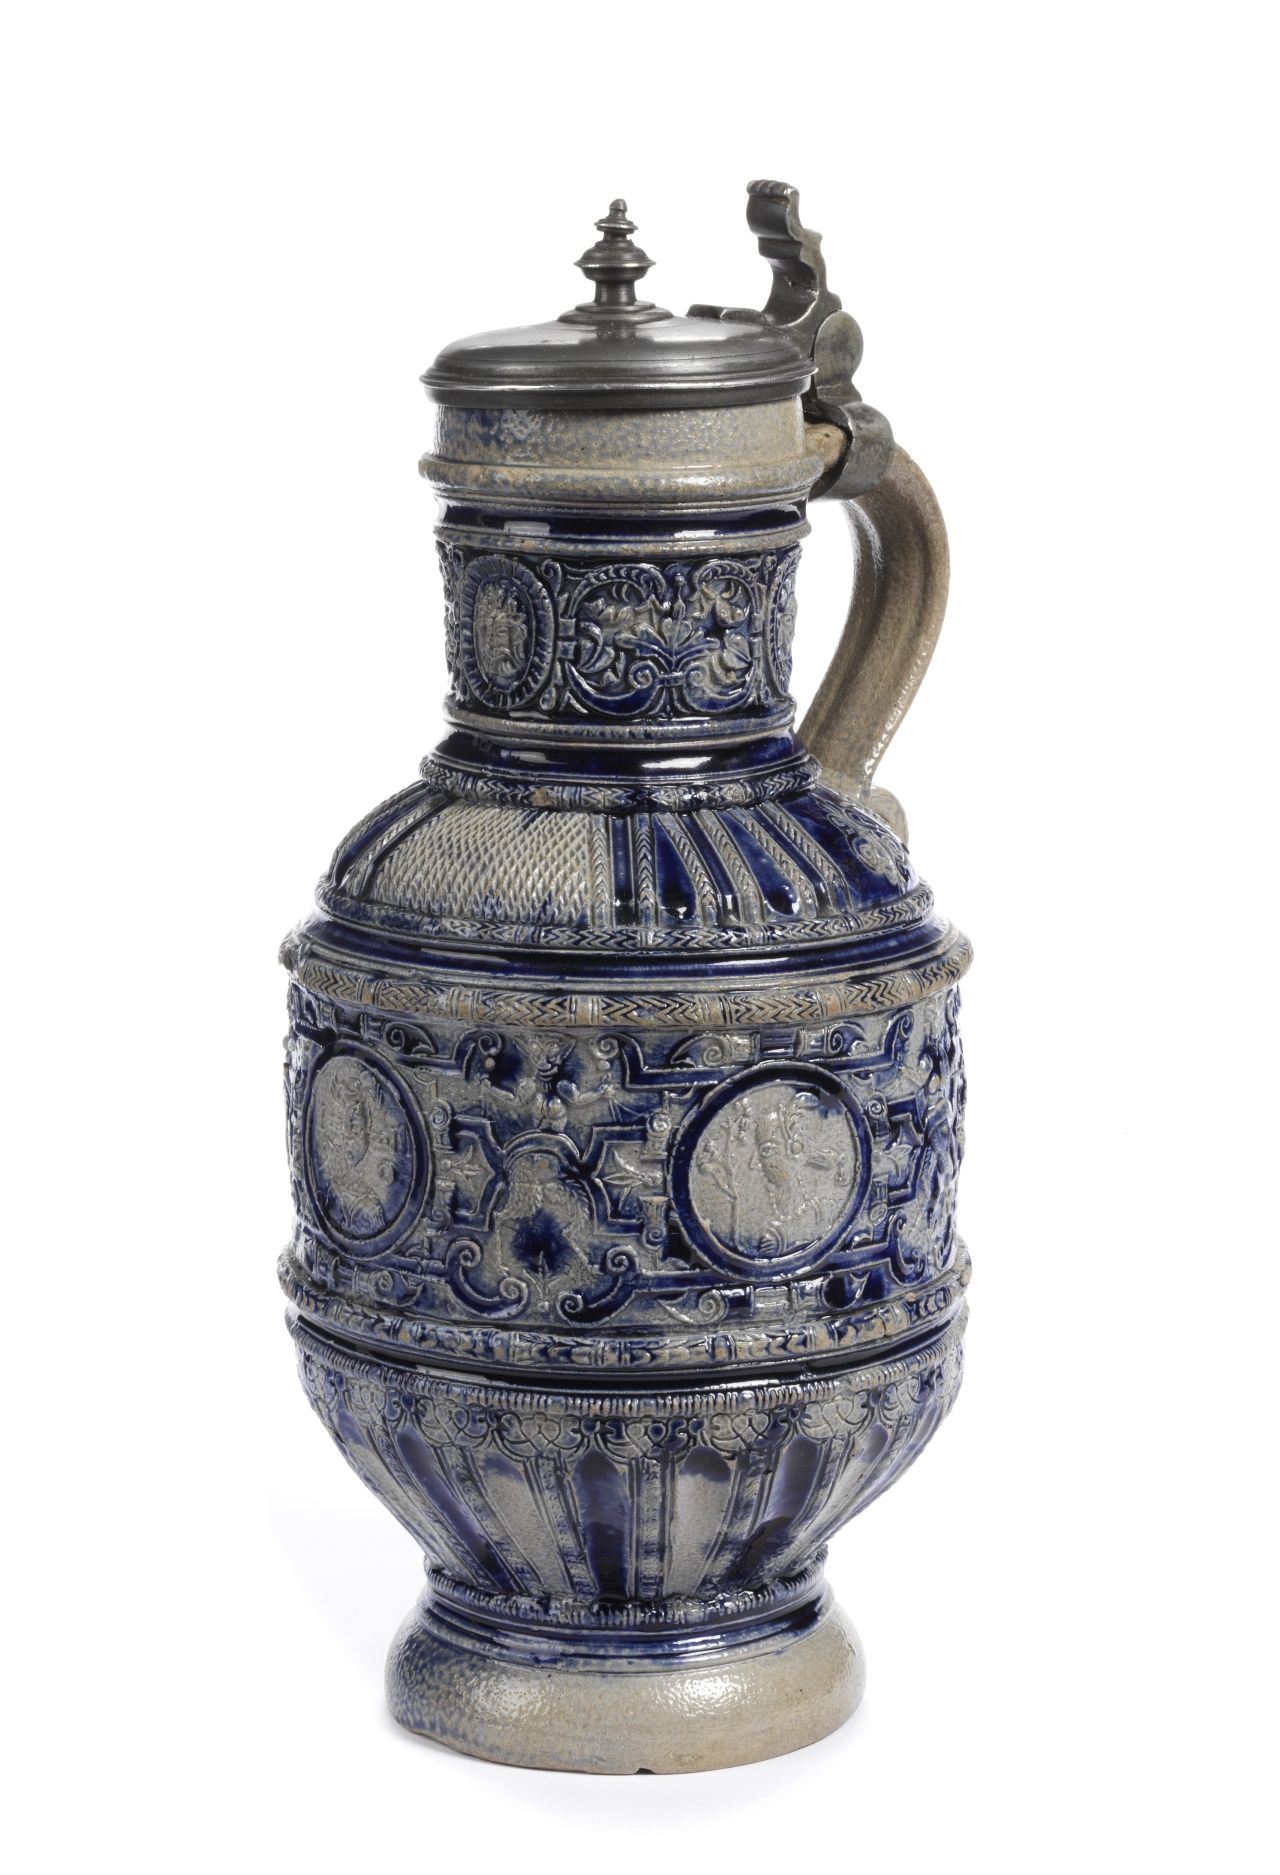 raeren-stoneware-frieze-jug-1590-emens